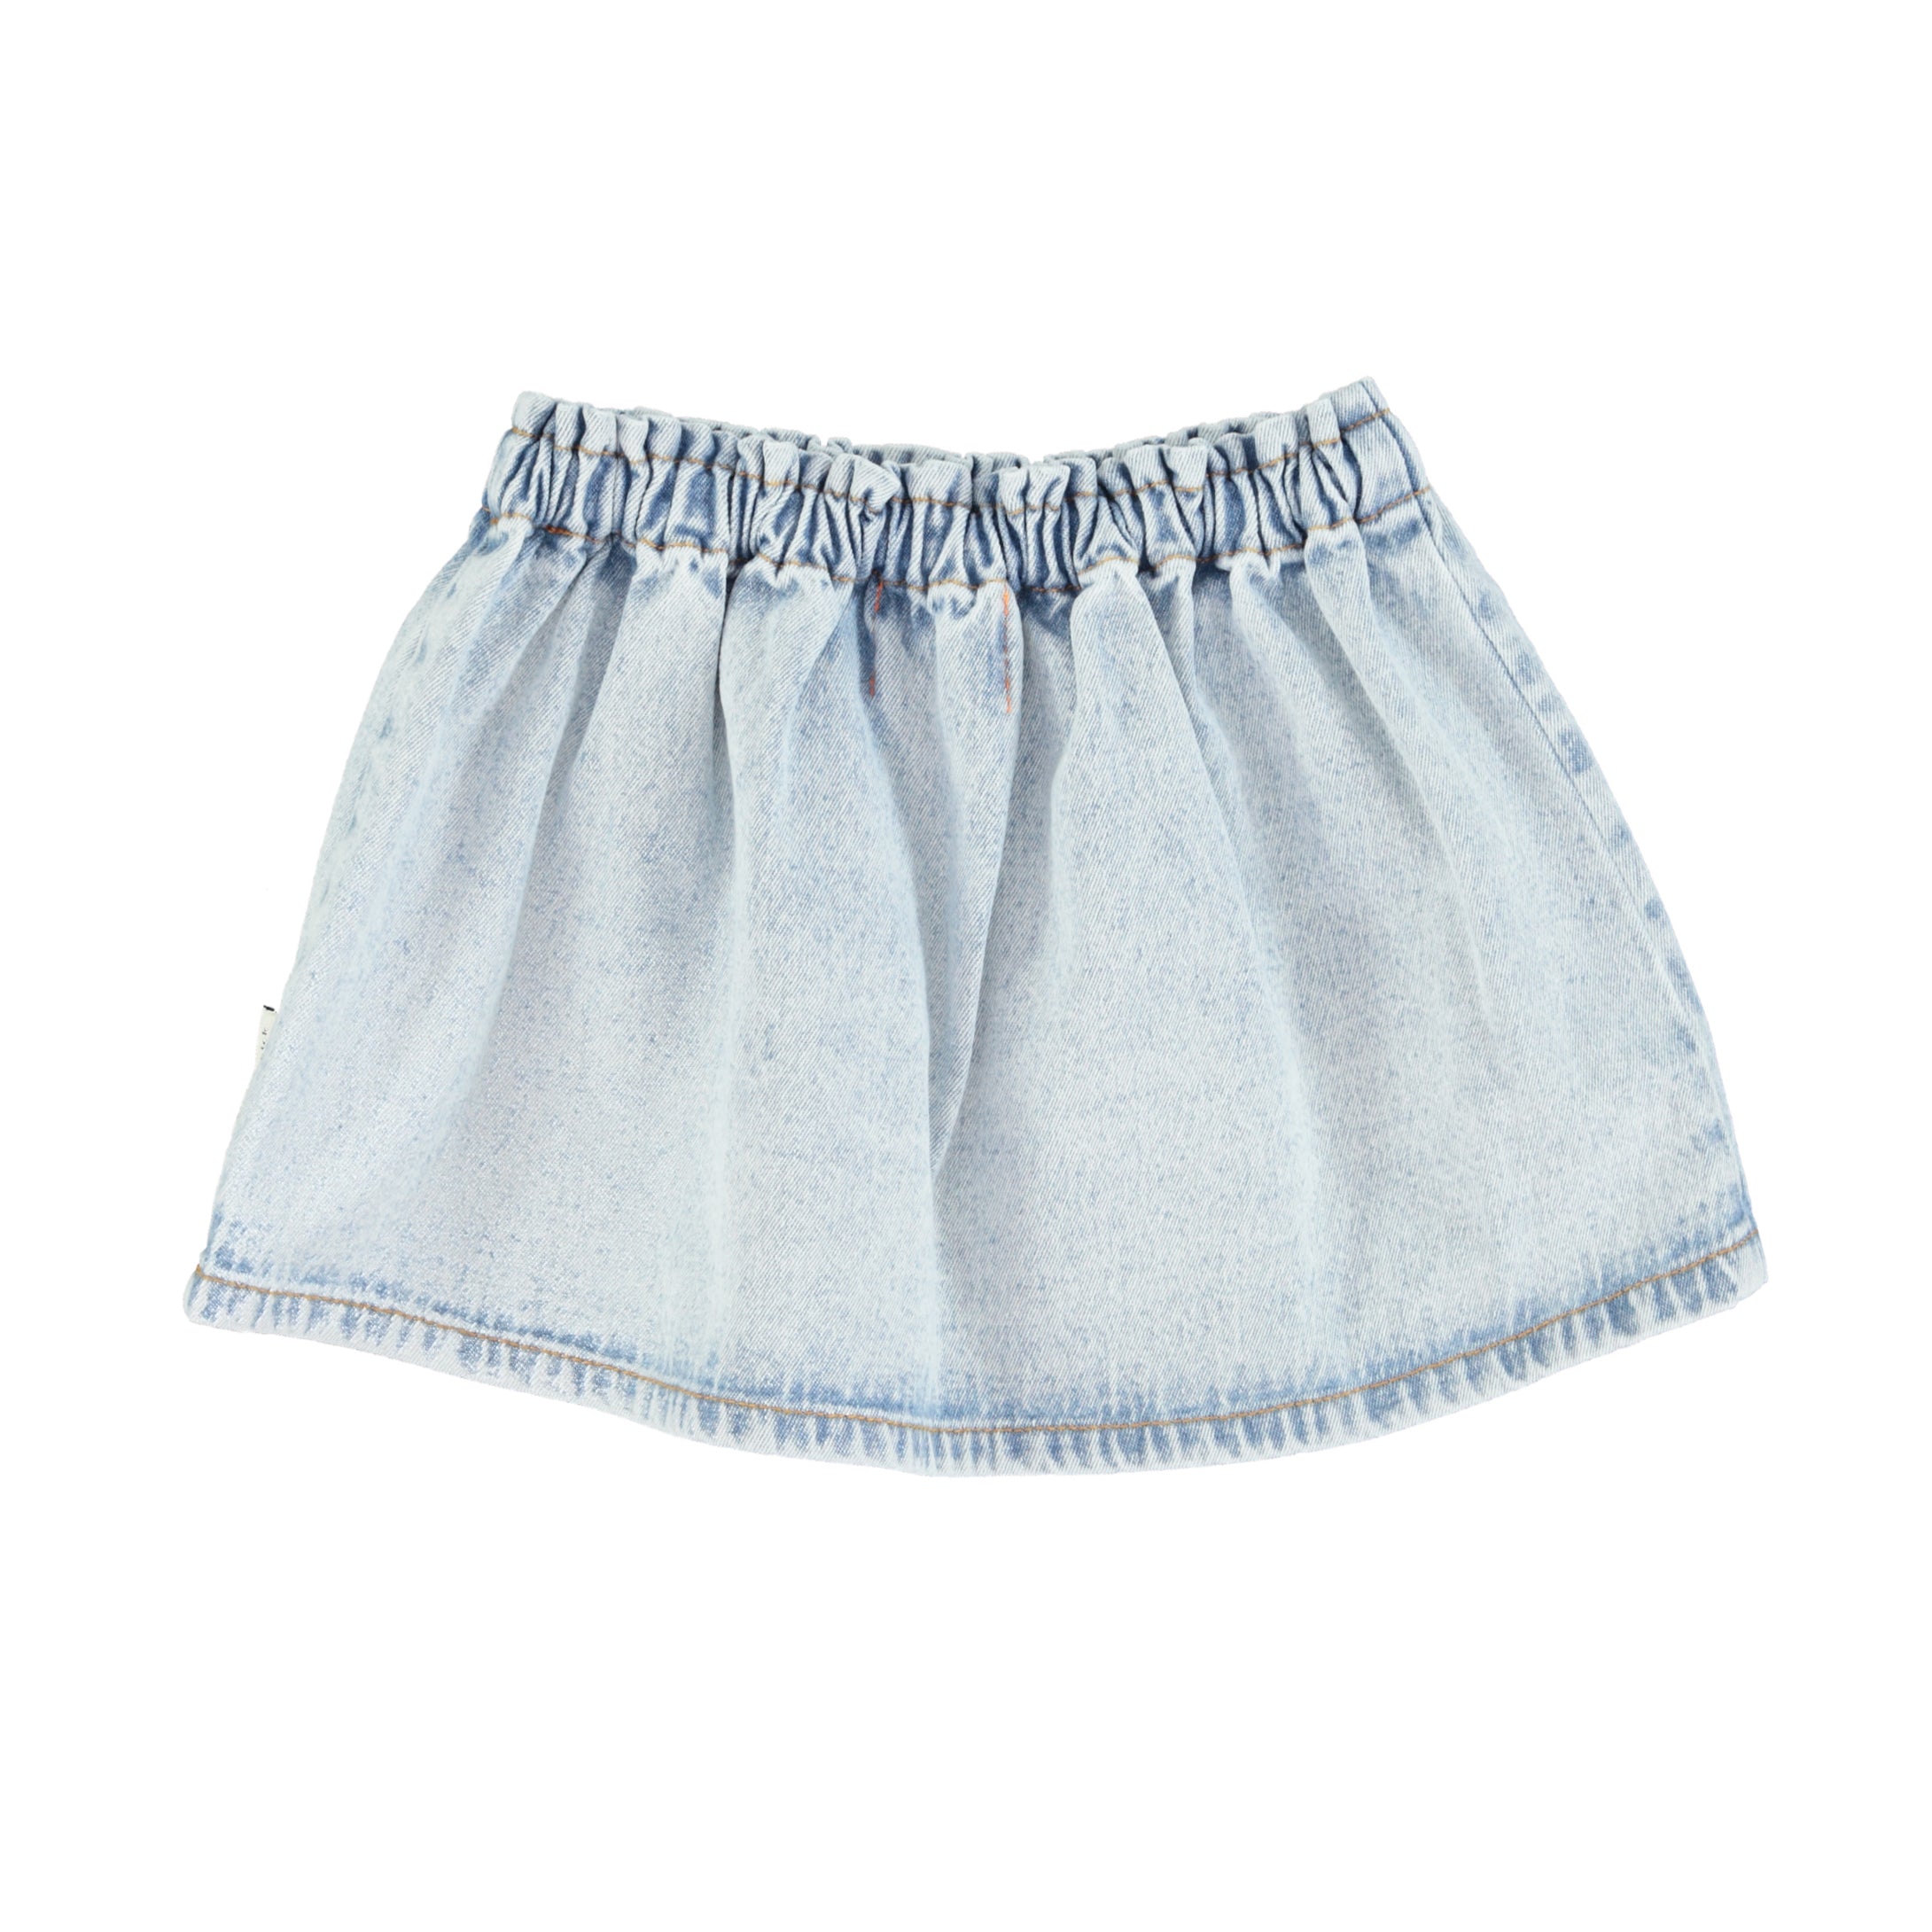 Piupiuchick Washed Denim Short Pocket Skirt